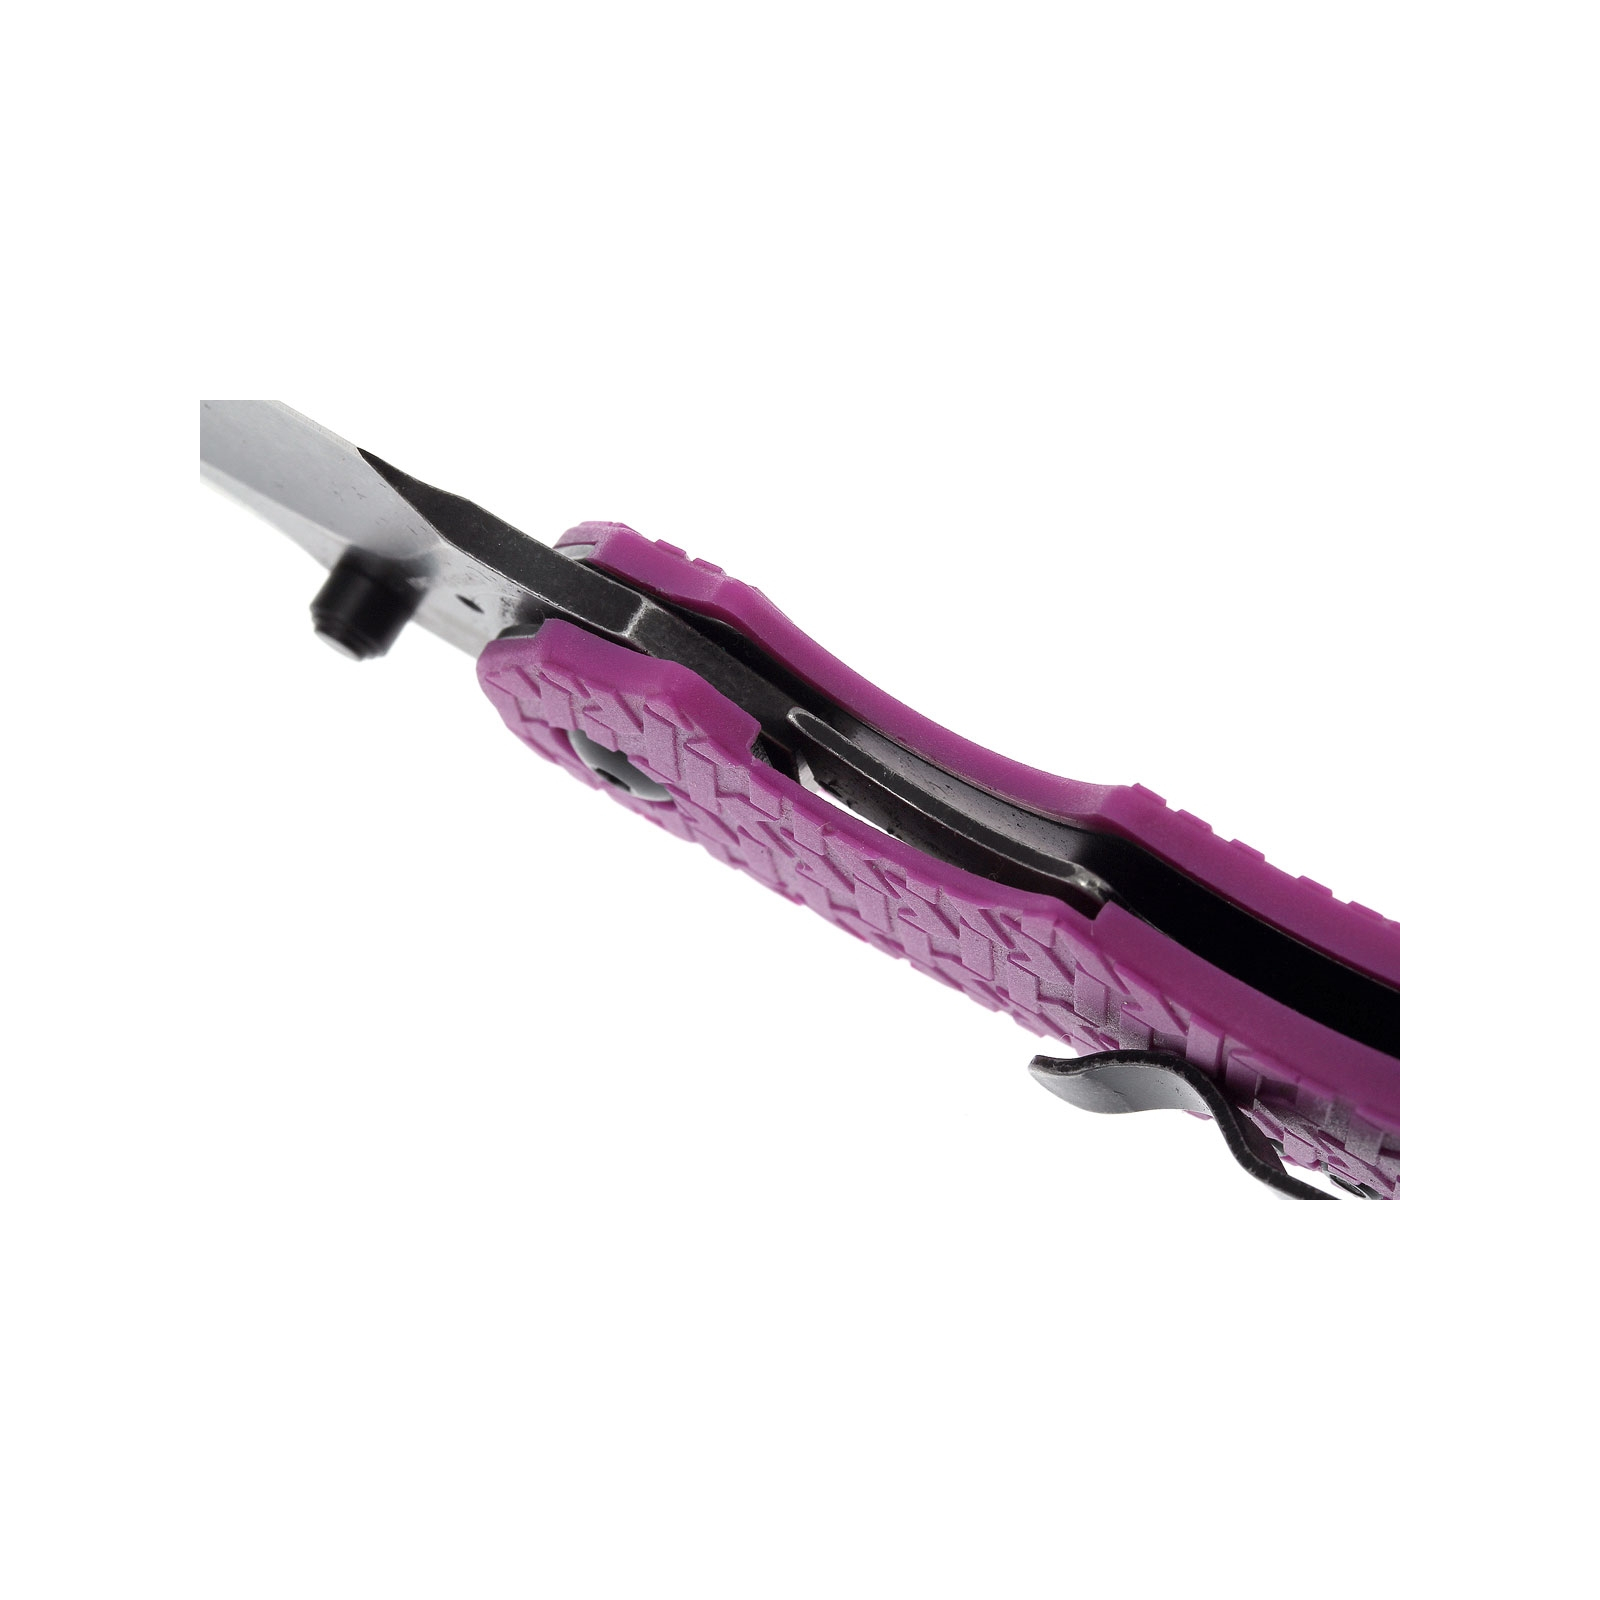 Нож Kershaw Shuffle фиолетовый (8700PURBW) изображение 5